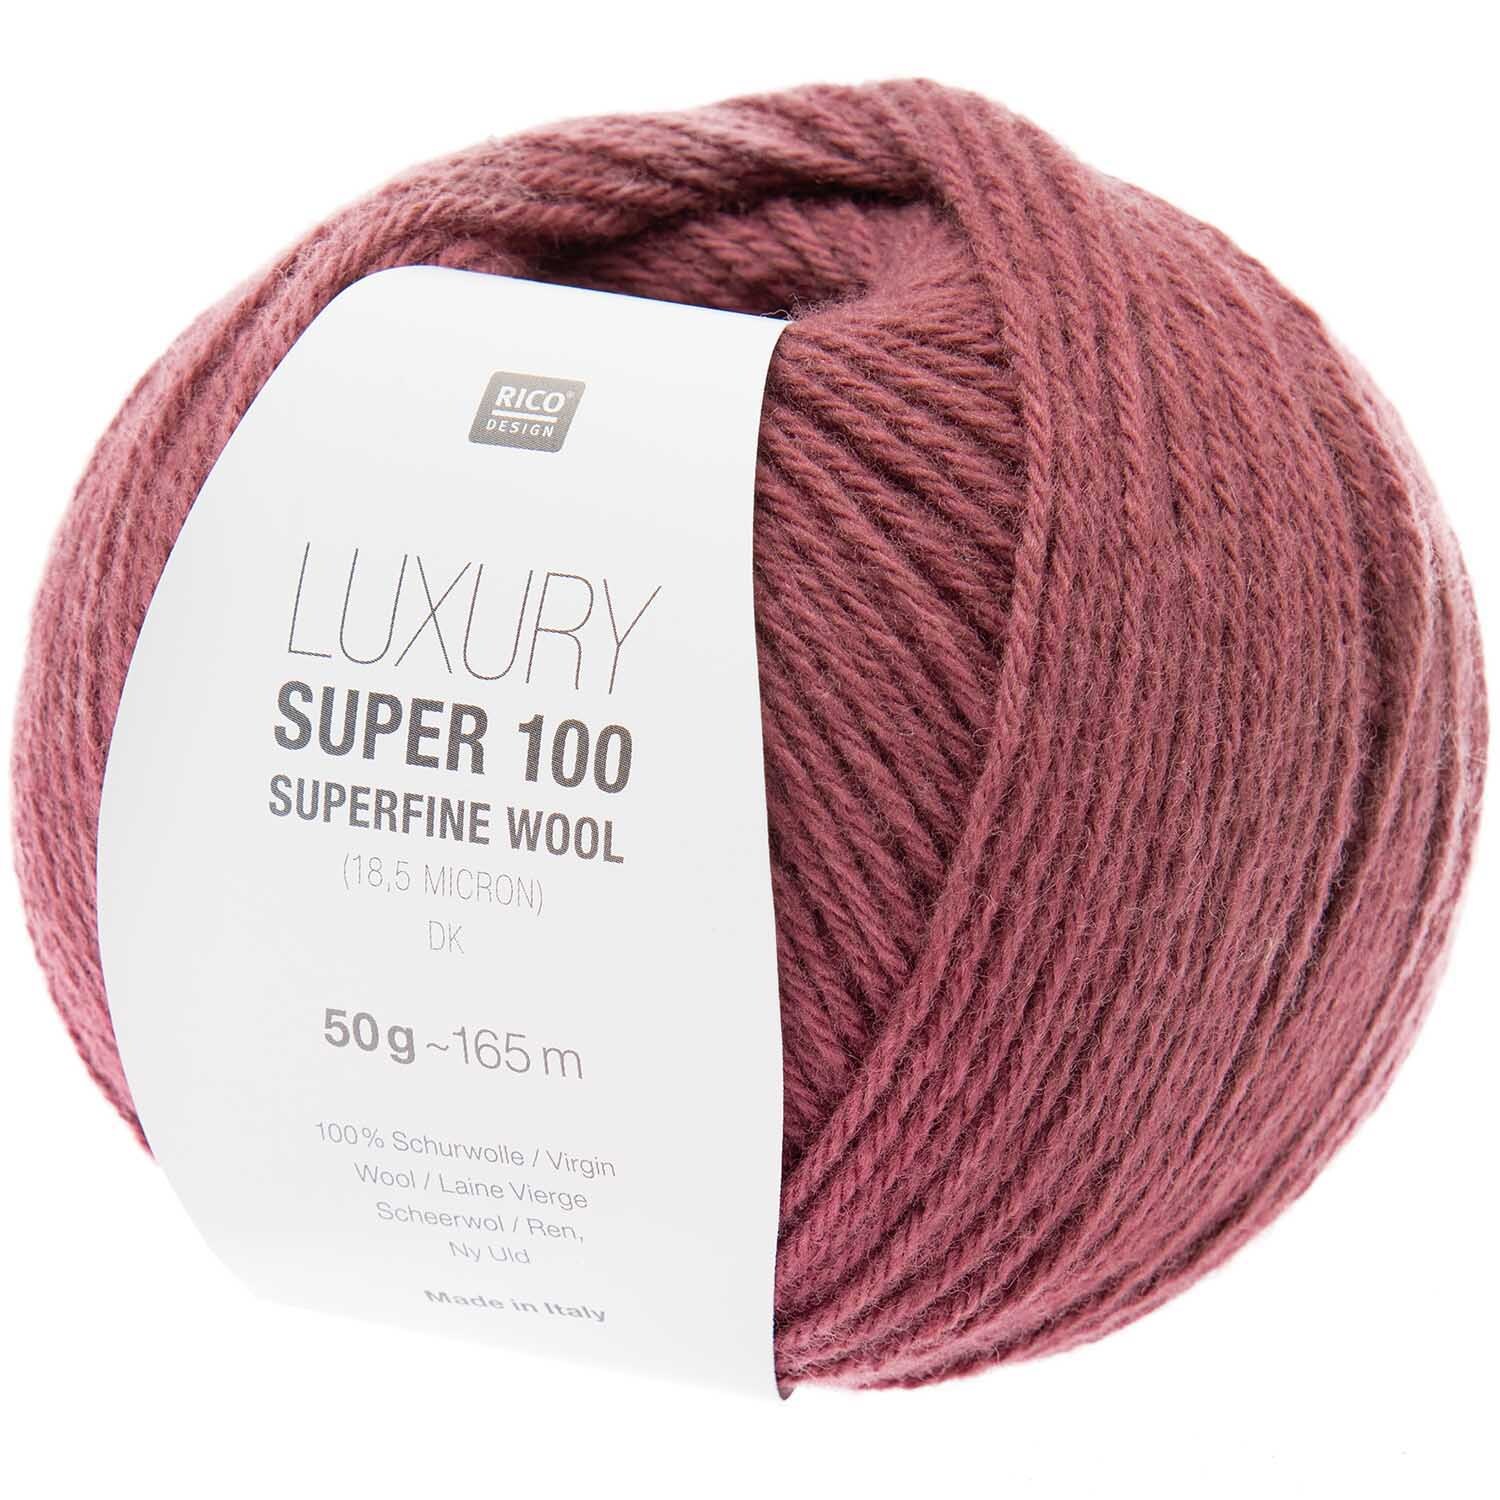 Luxury Super 100 Superfine Wool dk